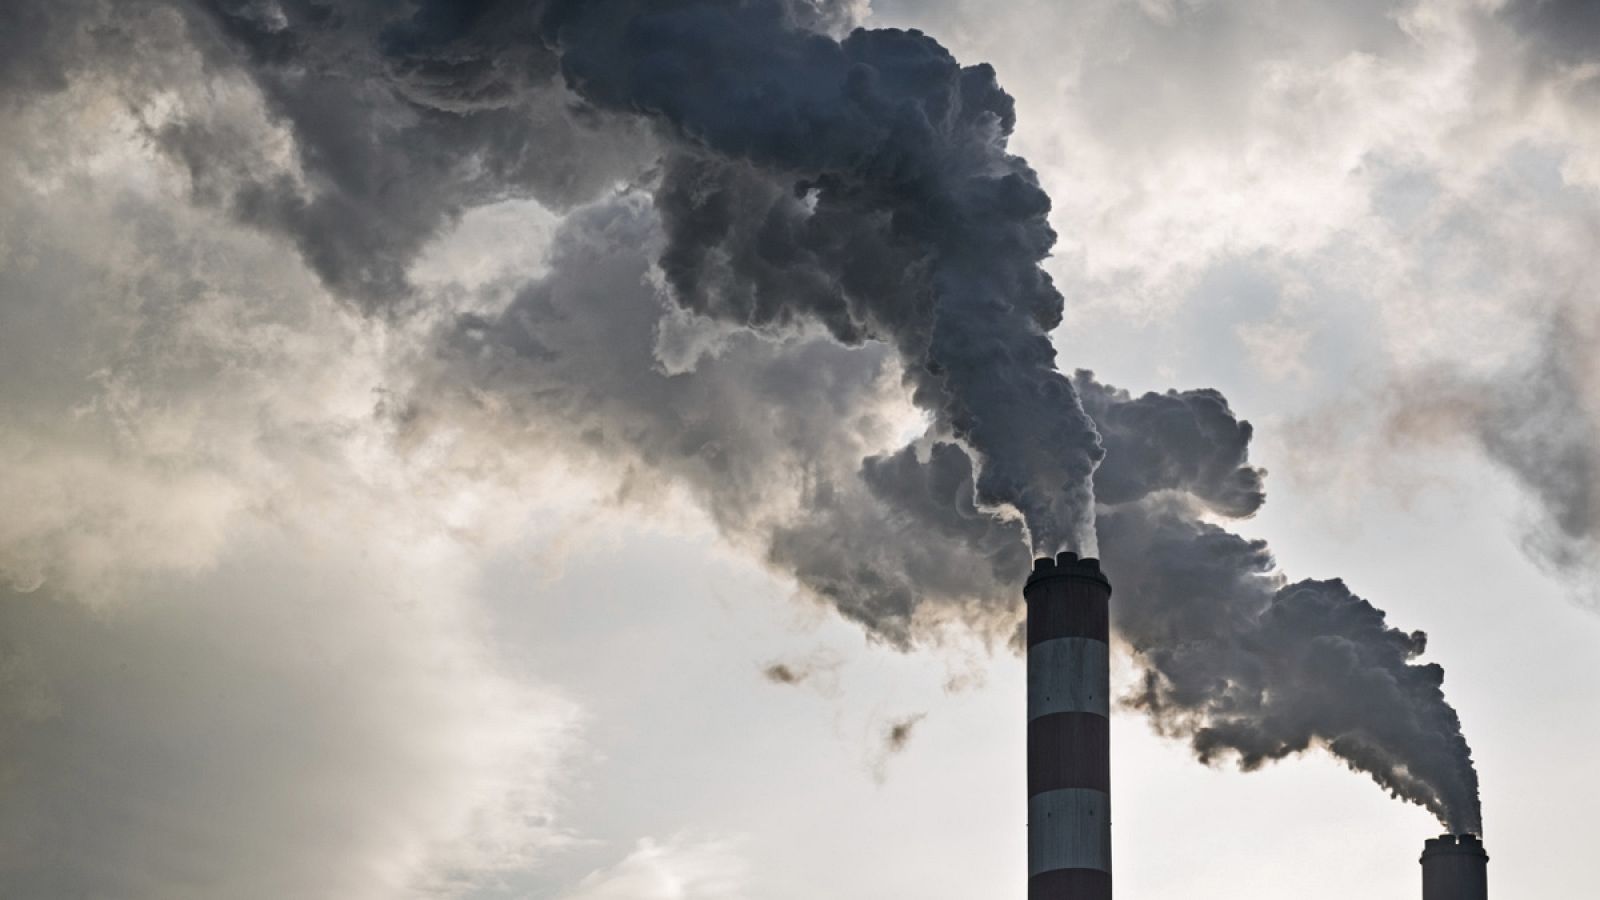 La mortalidad prematura por la contaminación del aire podría duplicarse en el año 2050 y causar la muerte de 6,6 millones de personas cada año, según sugiere un estudio publicado en la revista Nature.